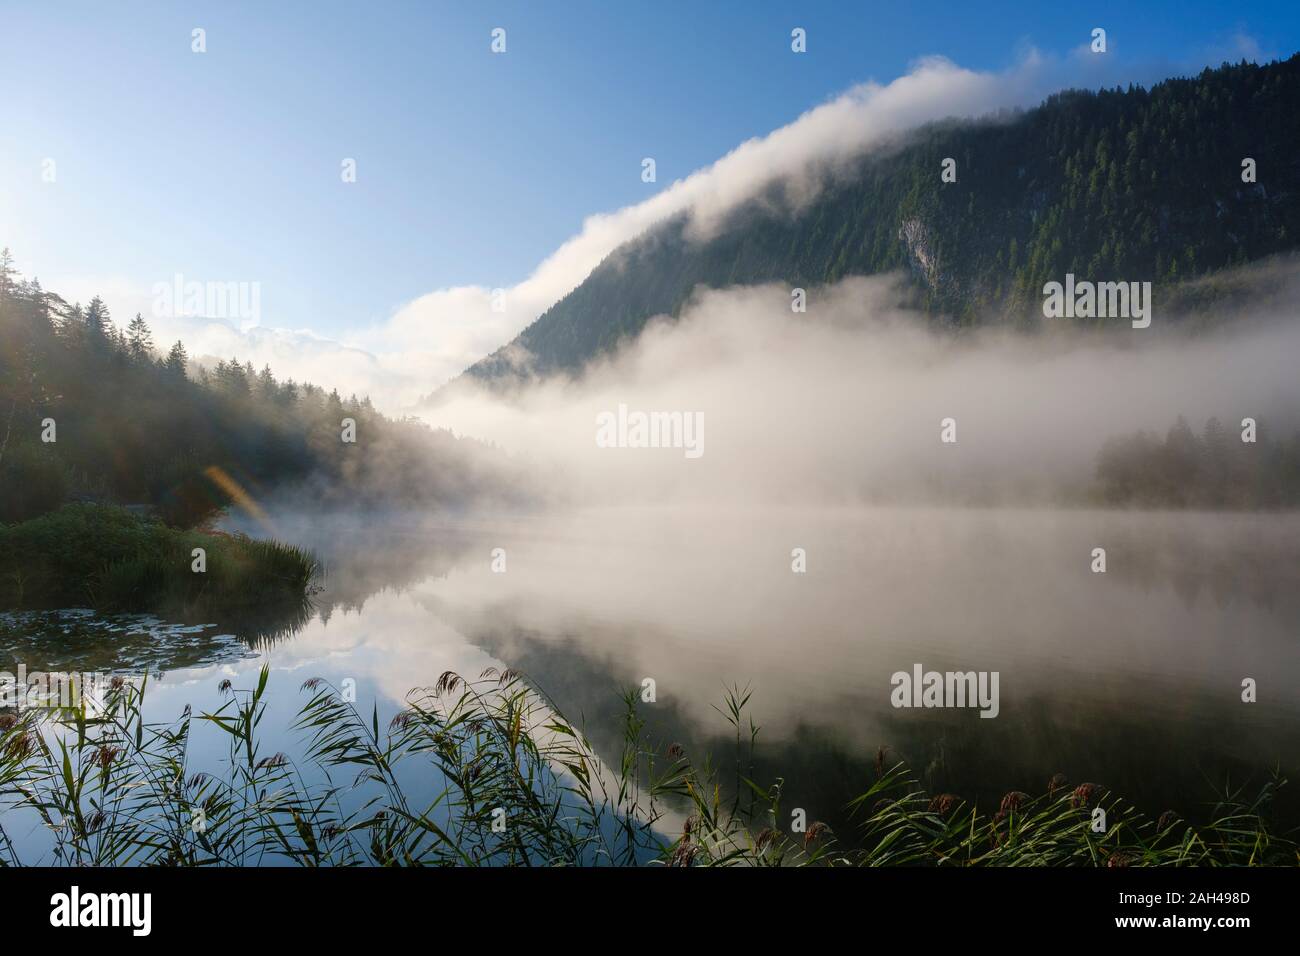 Germany, Bavaria, Mittenwald, épais brouillard flottant sur Ferchensee lake à l'aube Banque D'Images